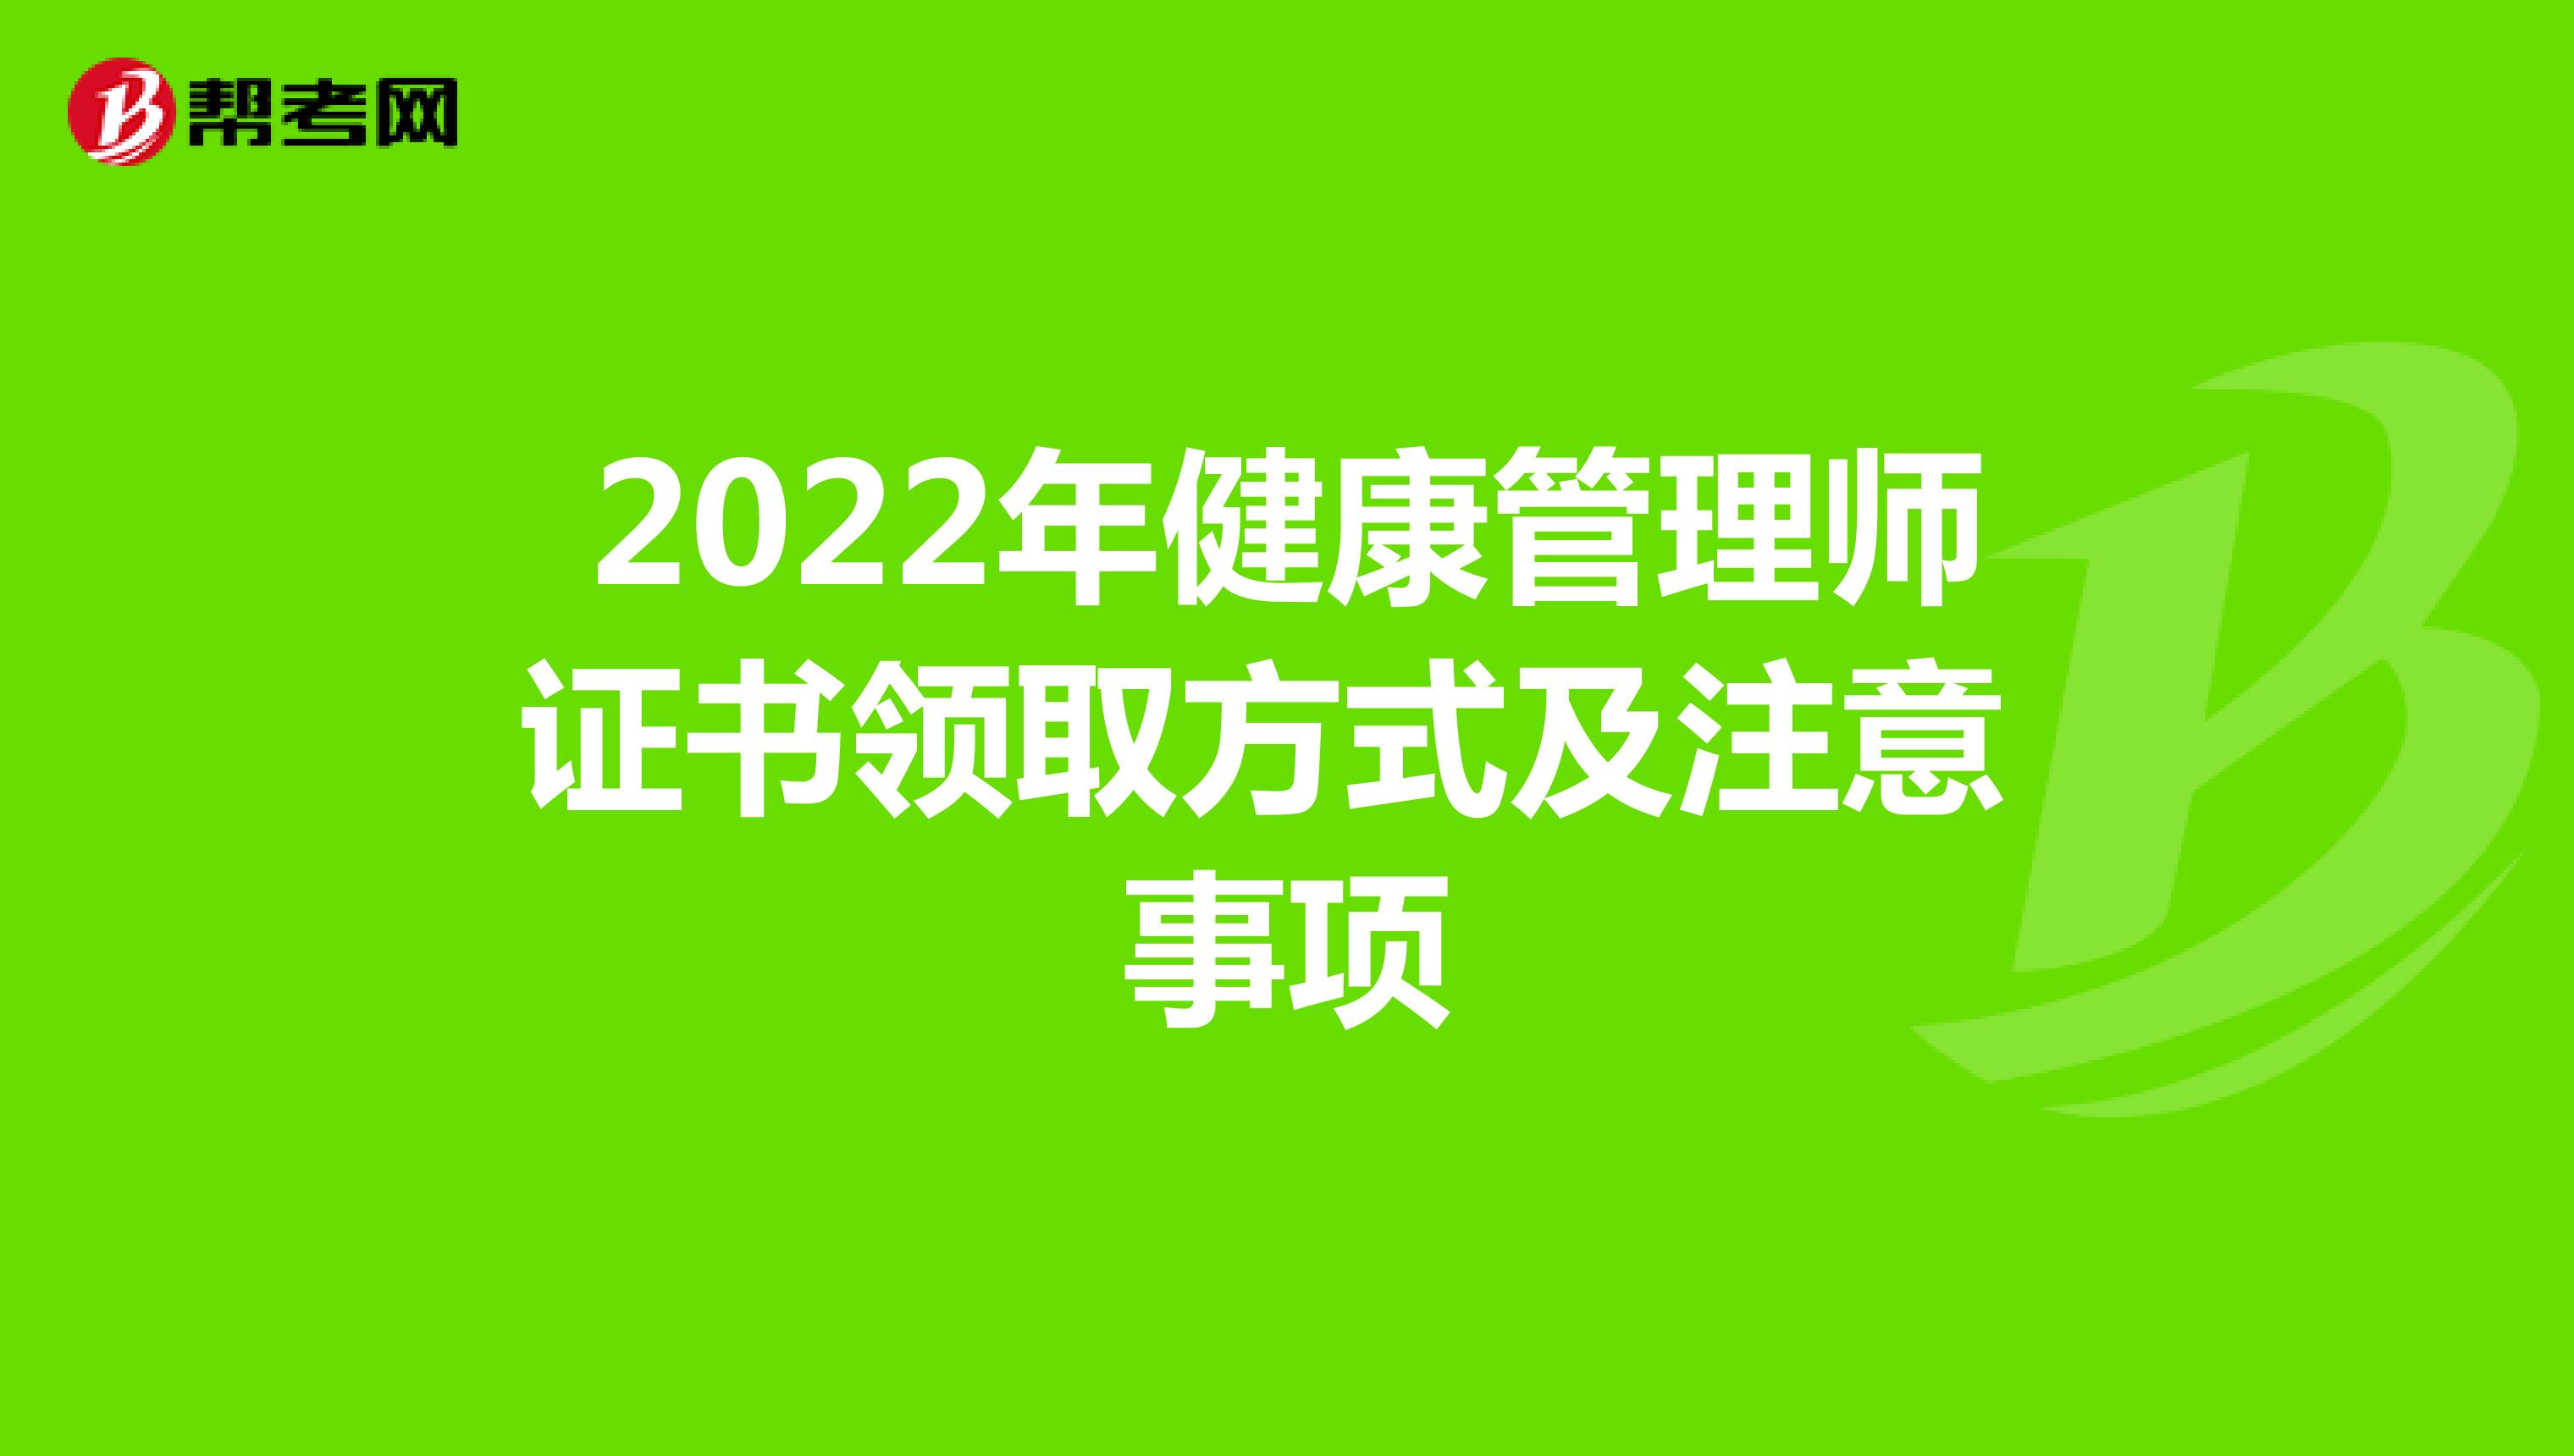 2022年健康管理师证书领取方式及注意事项